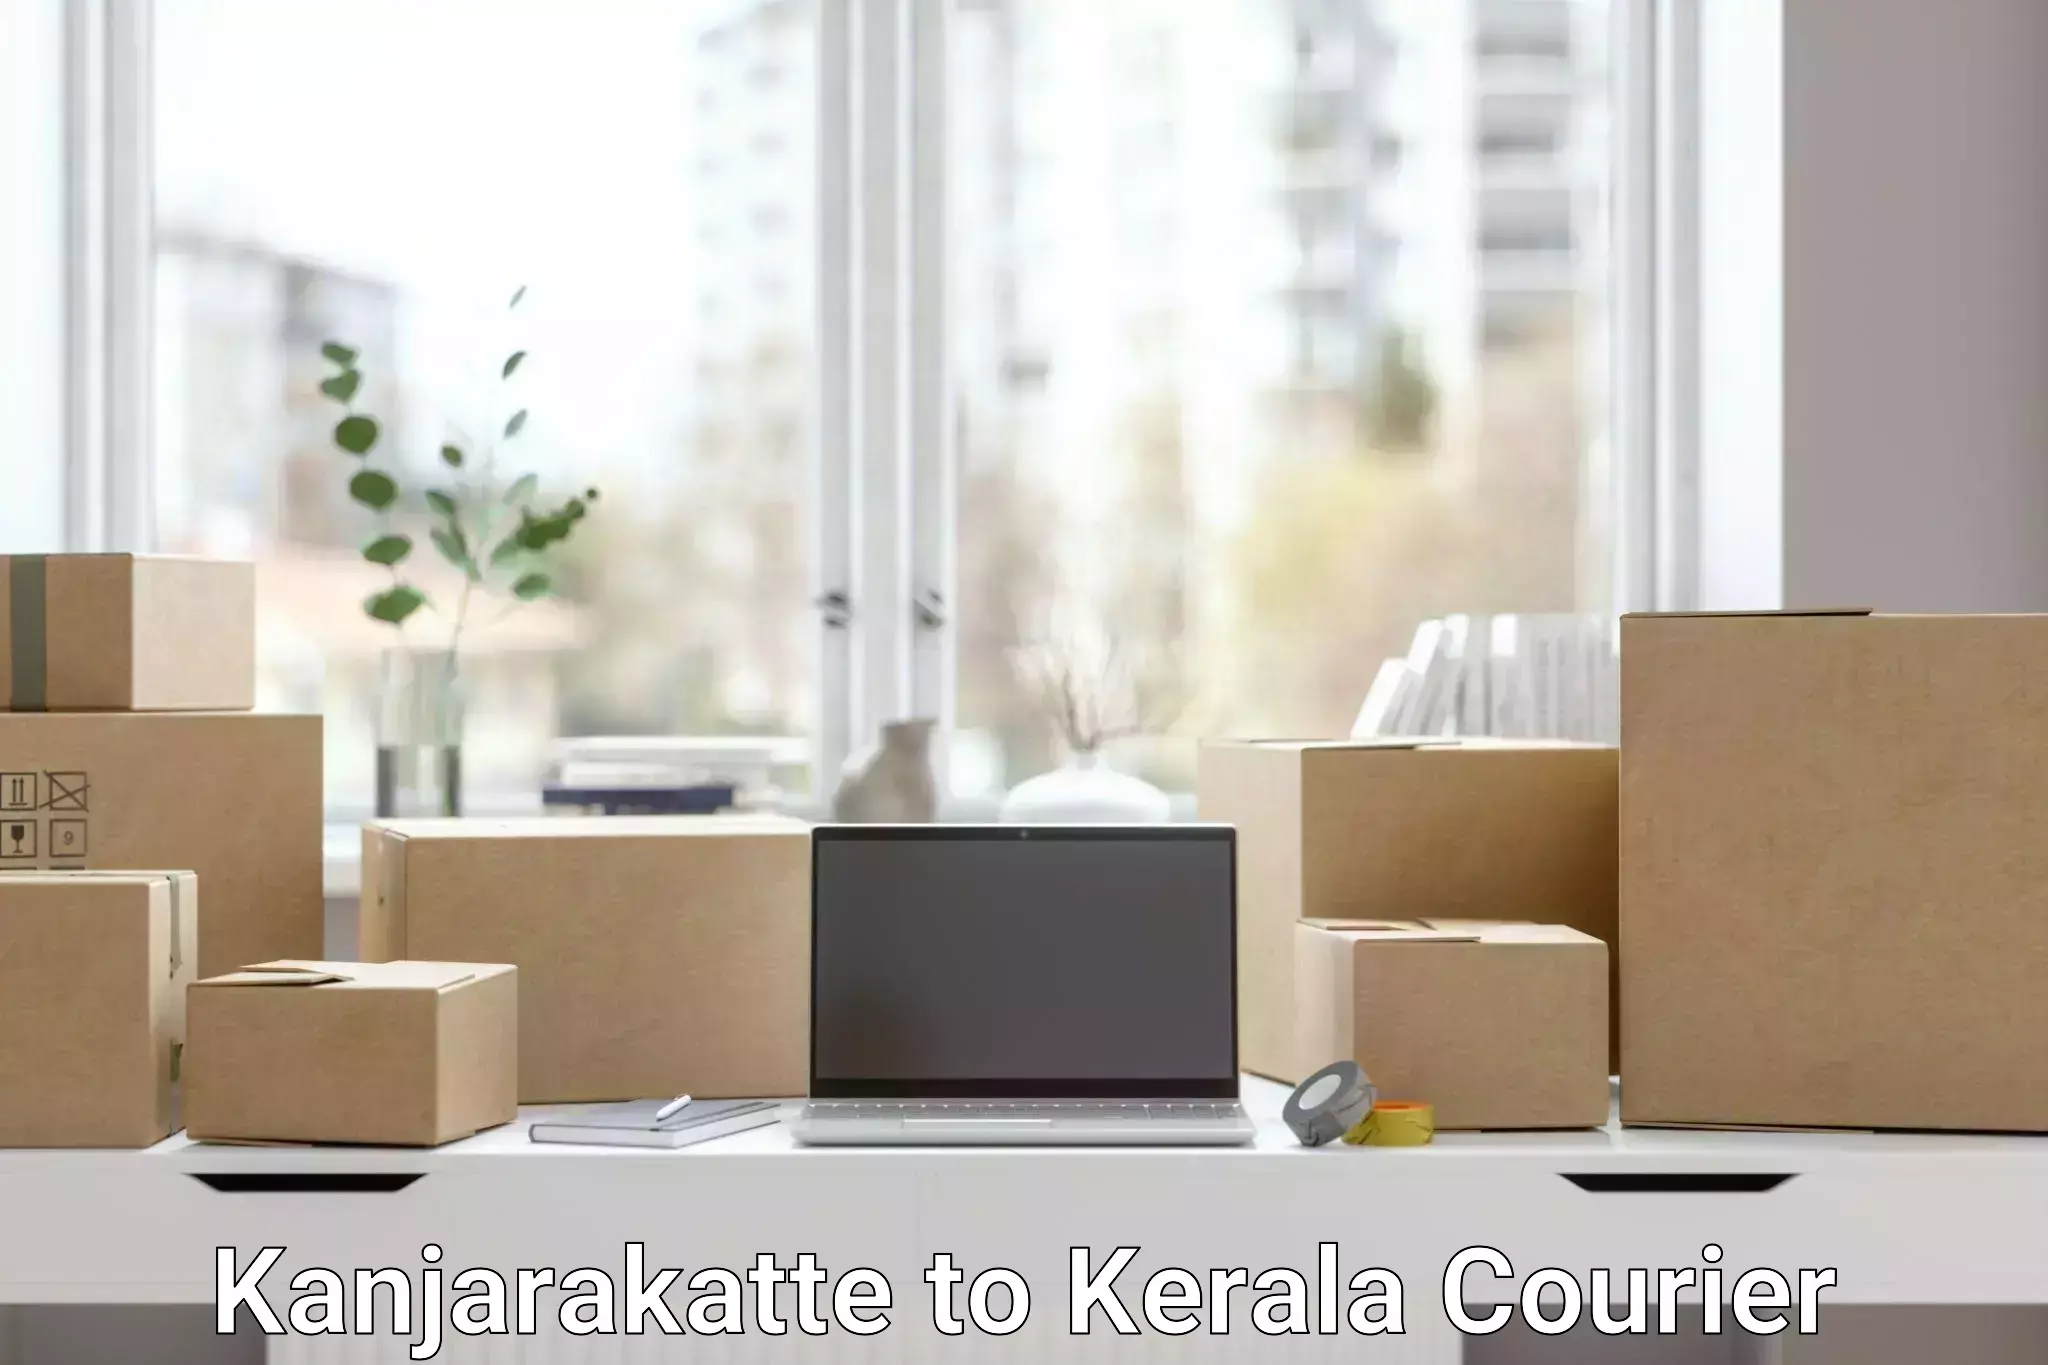 Customer-centric shipping Kanjarakatte to Kayamkulam